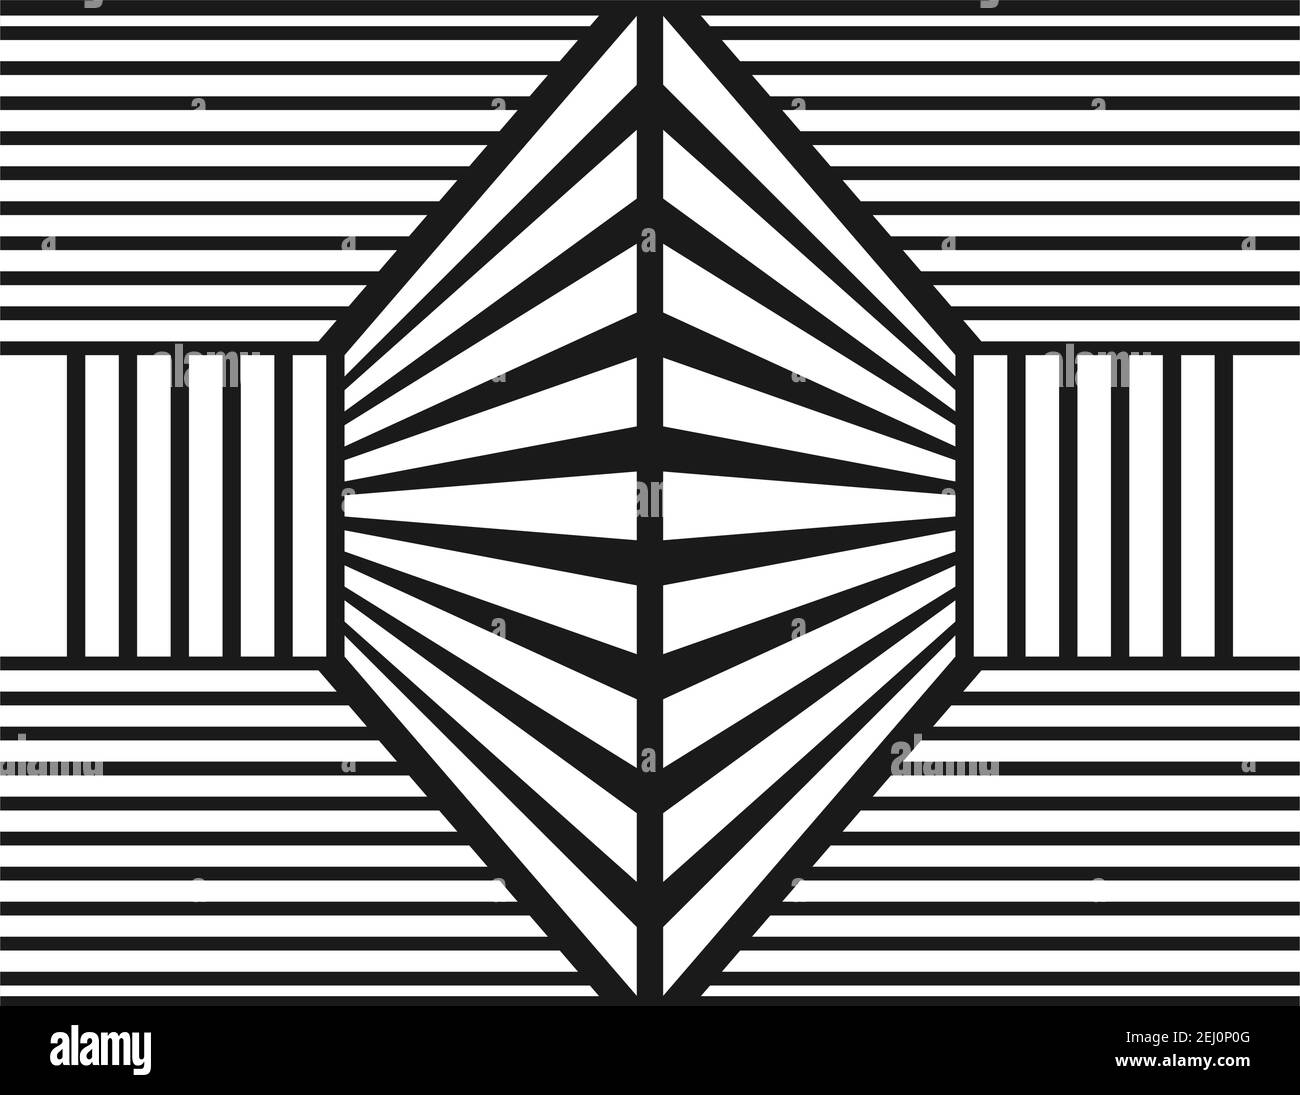 Lineas paralelas horizontales Imágenes de stock en blanco y negro - Alamy